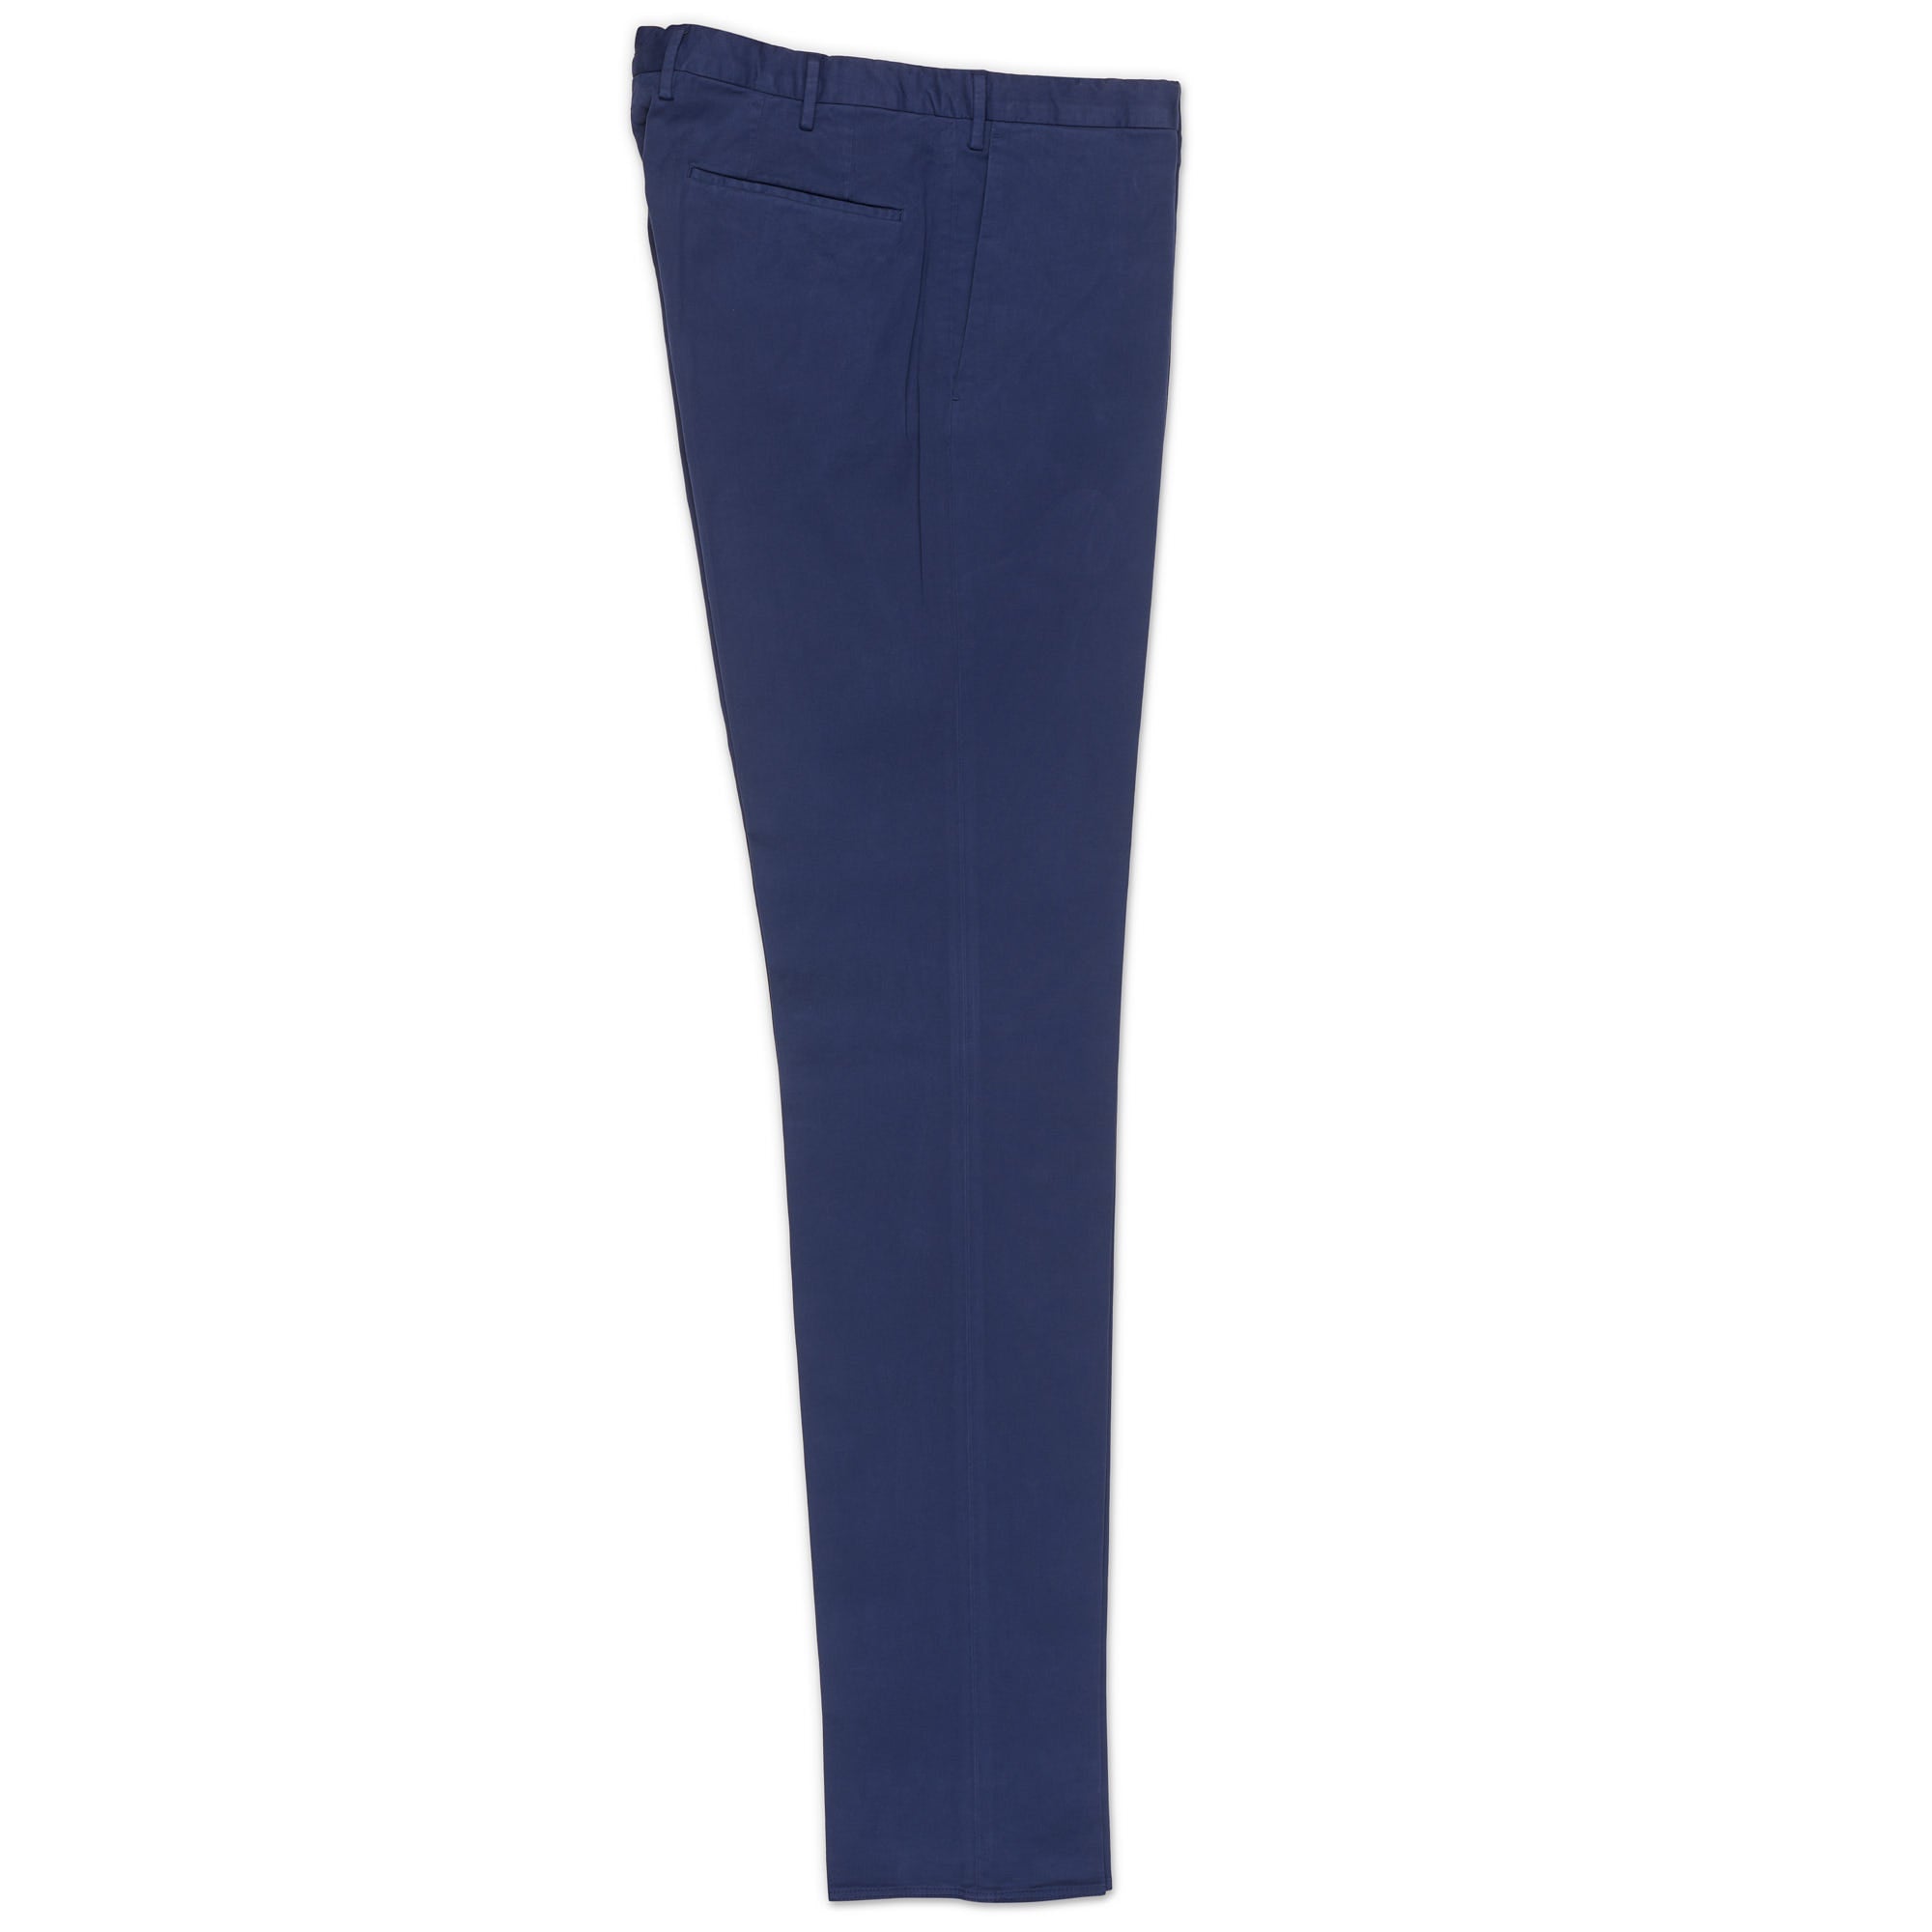 INCOTEX (Slowear) Pattern 82 Blue Cotton Flat Front Chino Pants 52 NEW US 36 Ski INCOTEX